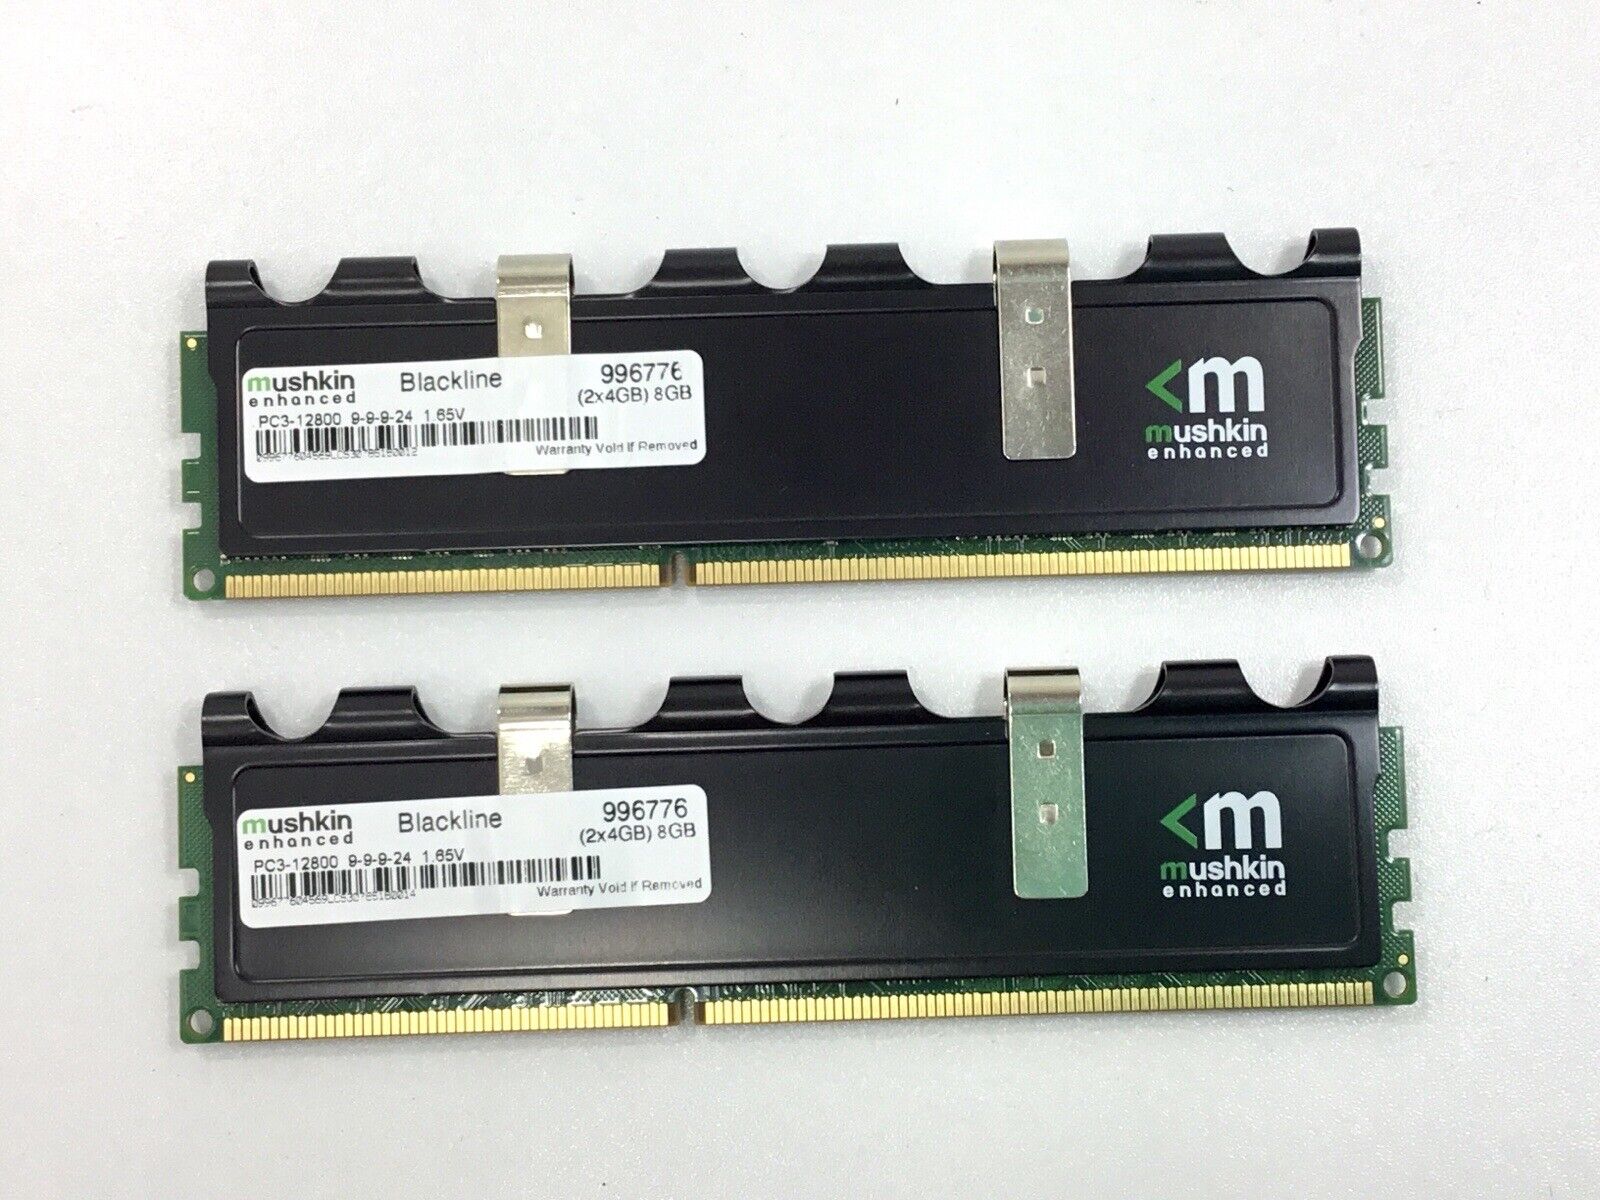 2- 8GB (2 x 4GB) Mushkin 996776 Blackline DDR3 desktop DIMMs PC3-12800U RAM